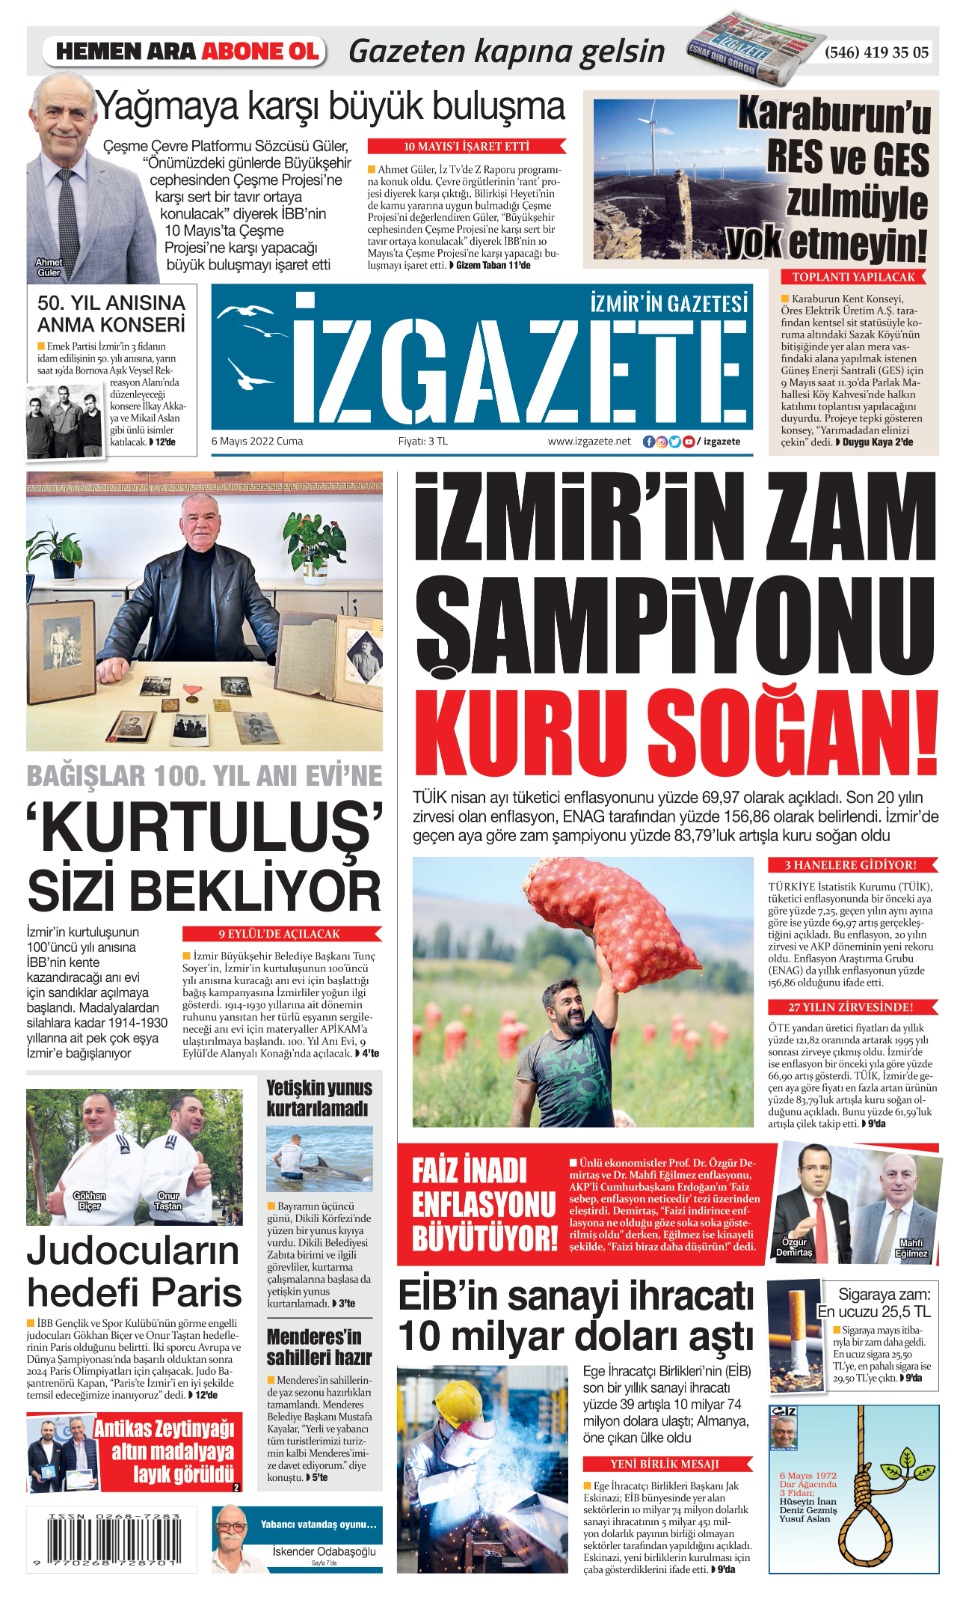 İz Gazete - İzmir'in Gazetesi - 06.05.2022 Manşeti